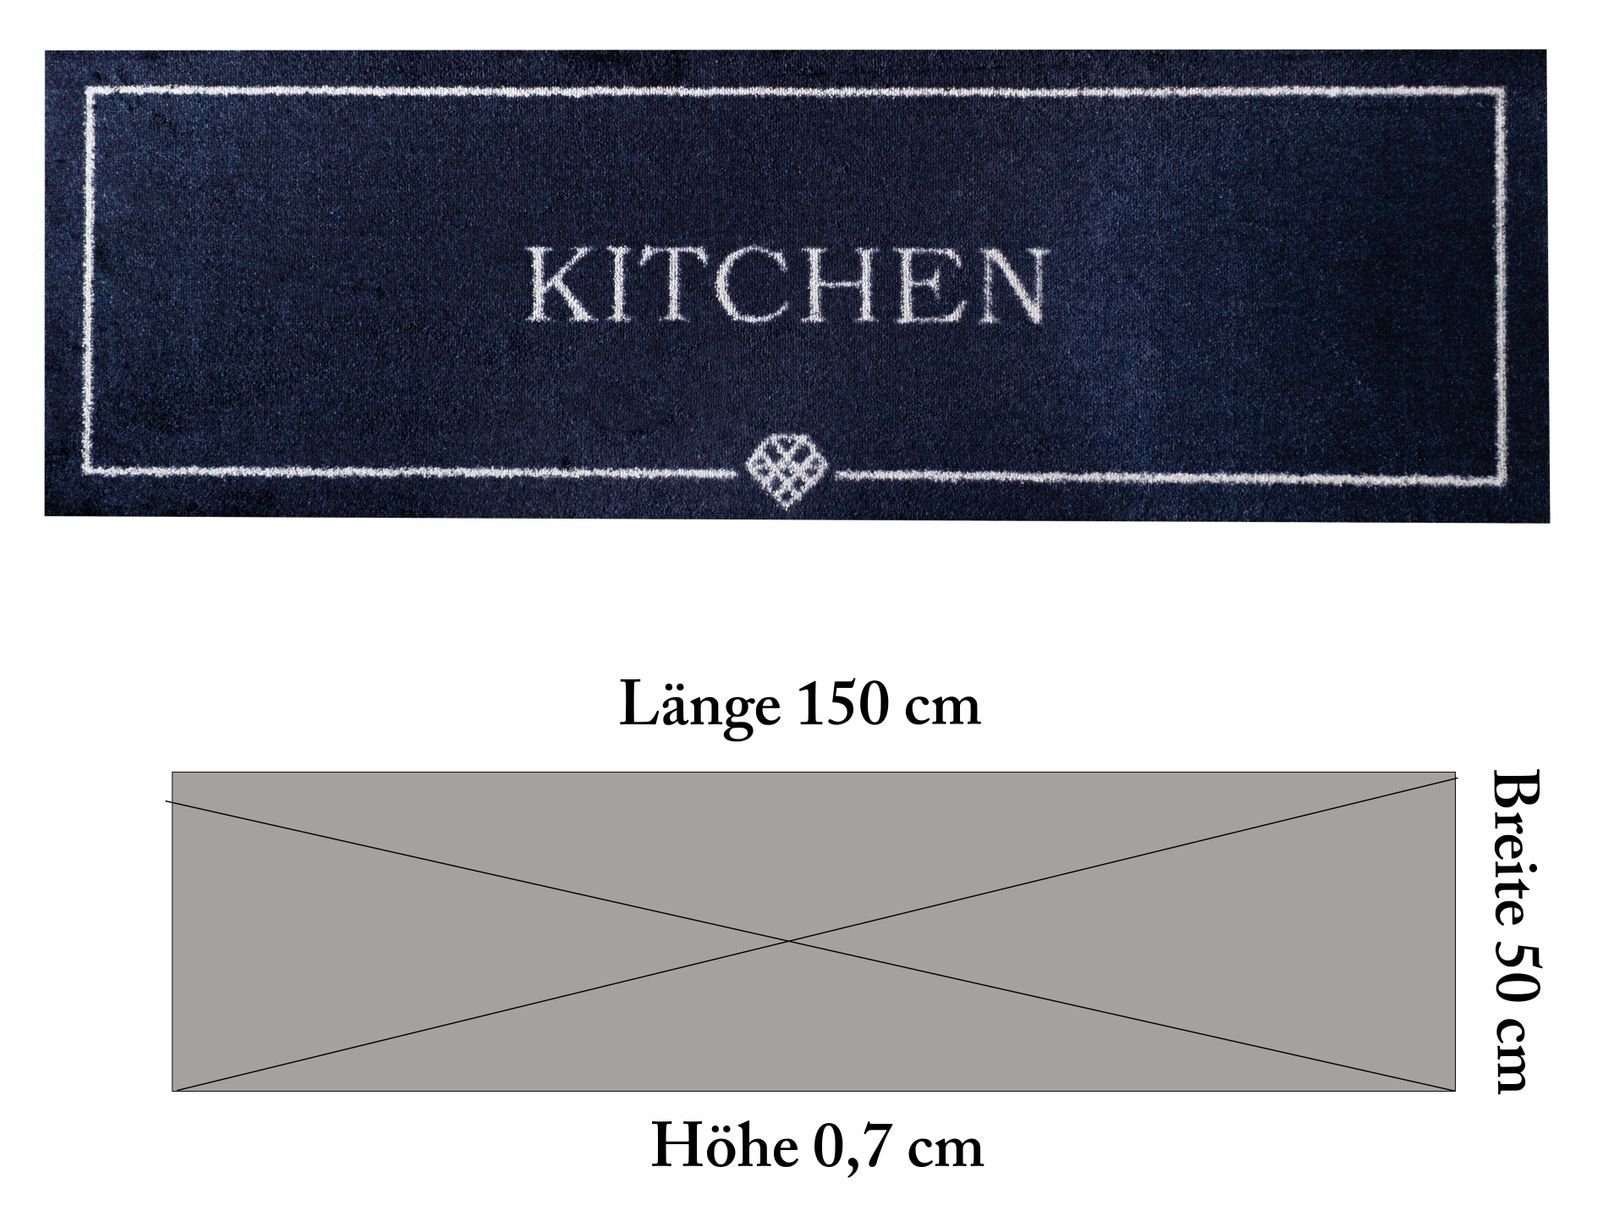 Küchenteppich cm, Küchenläufer Läufer, mm 050 x 4 KITCHEN 150 Höhe: Mr. Ghorbani,